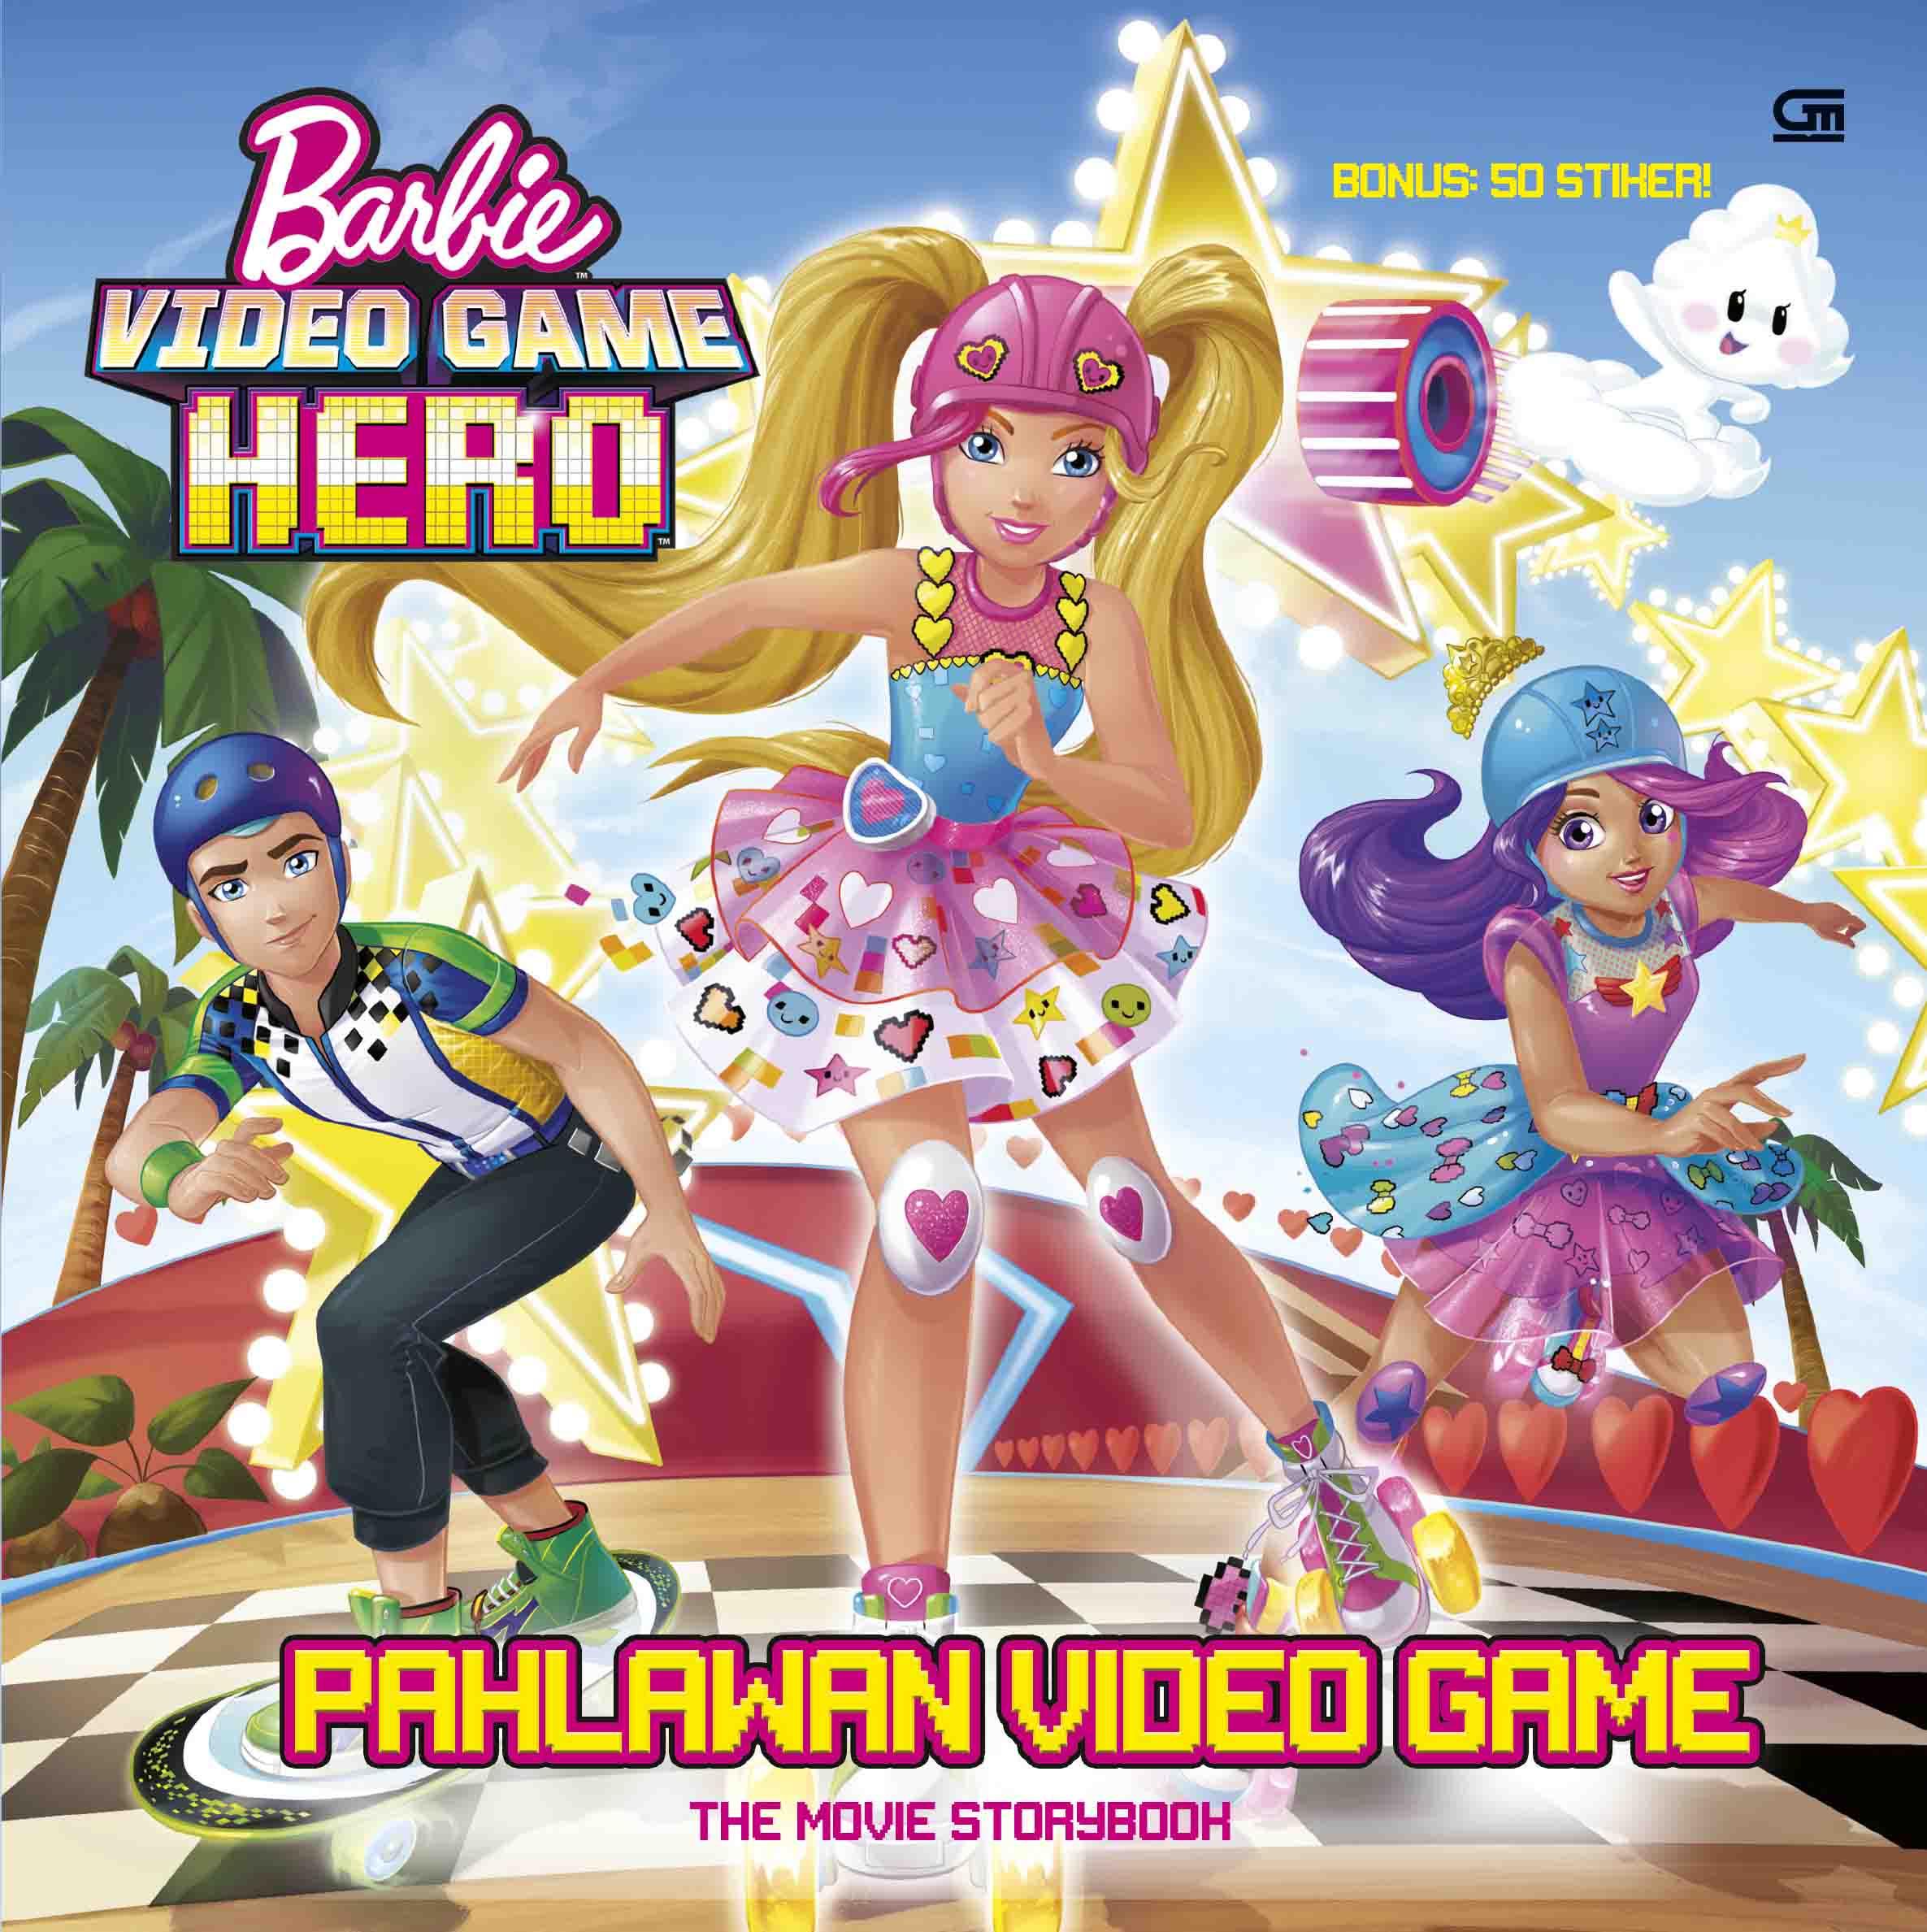 Barbie Video Game Hero: Pahlawan Video Game - The Movie Storybook